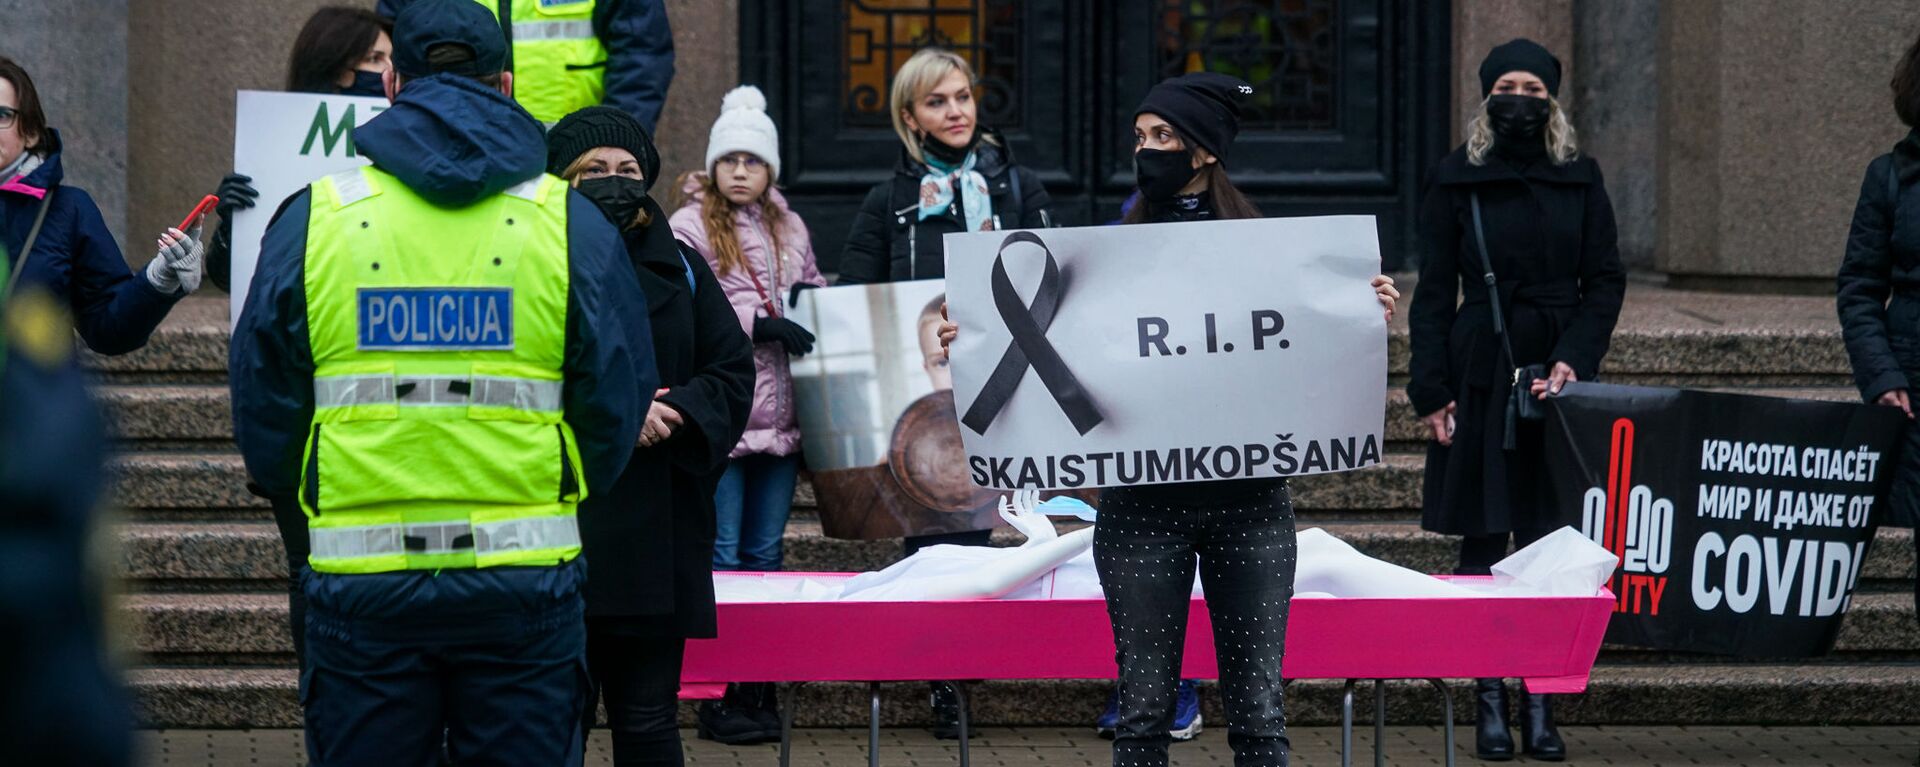 Акция протеста в Риге против ограничений, связанных с пандемией COVID-19, архивное фото - Sputnik Латвия, 1920, 06.04.2021